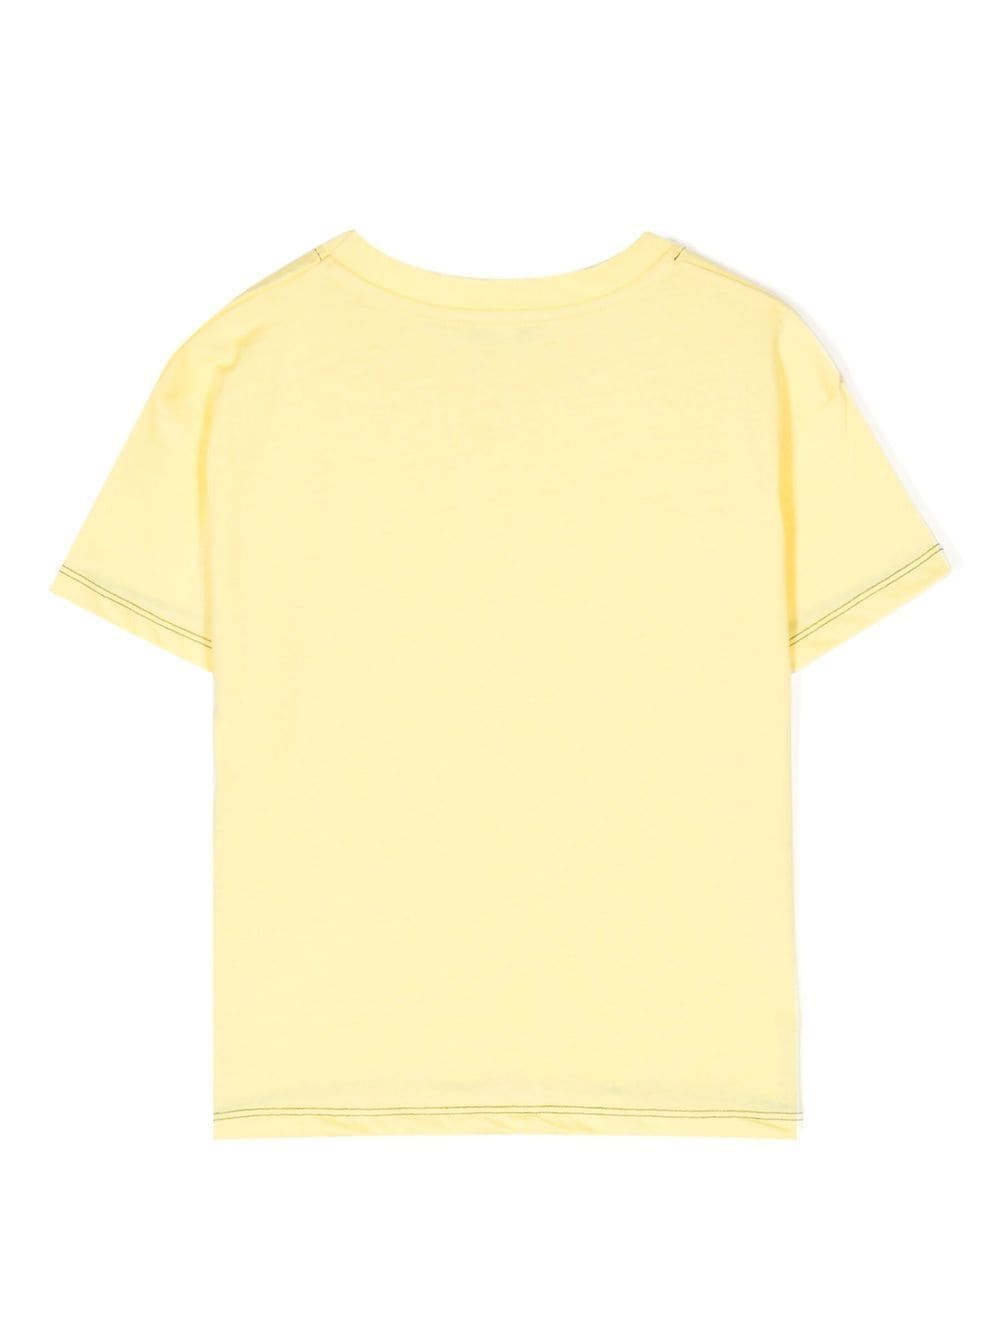 KINDRED T-shirt met contrasterend stiksel - Geel